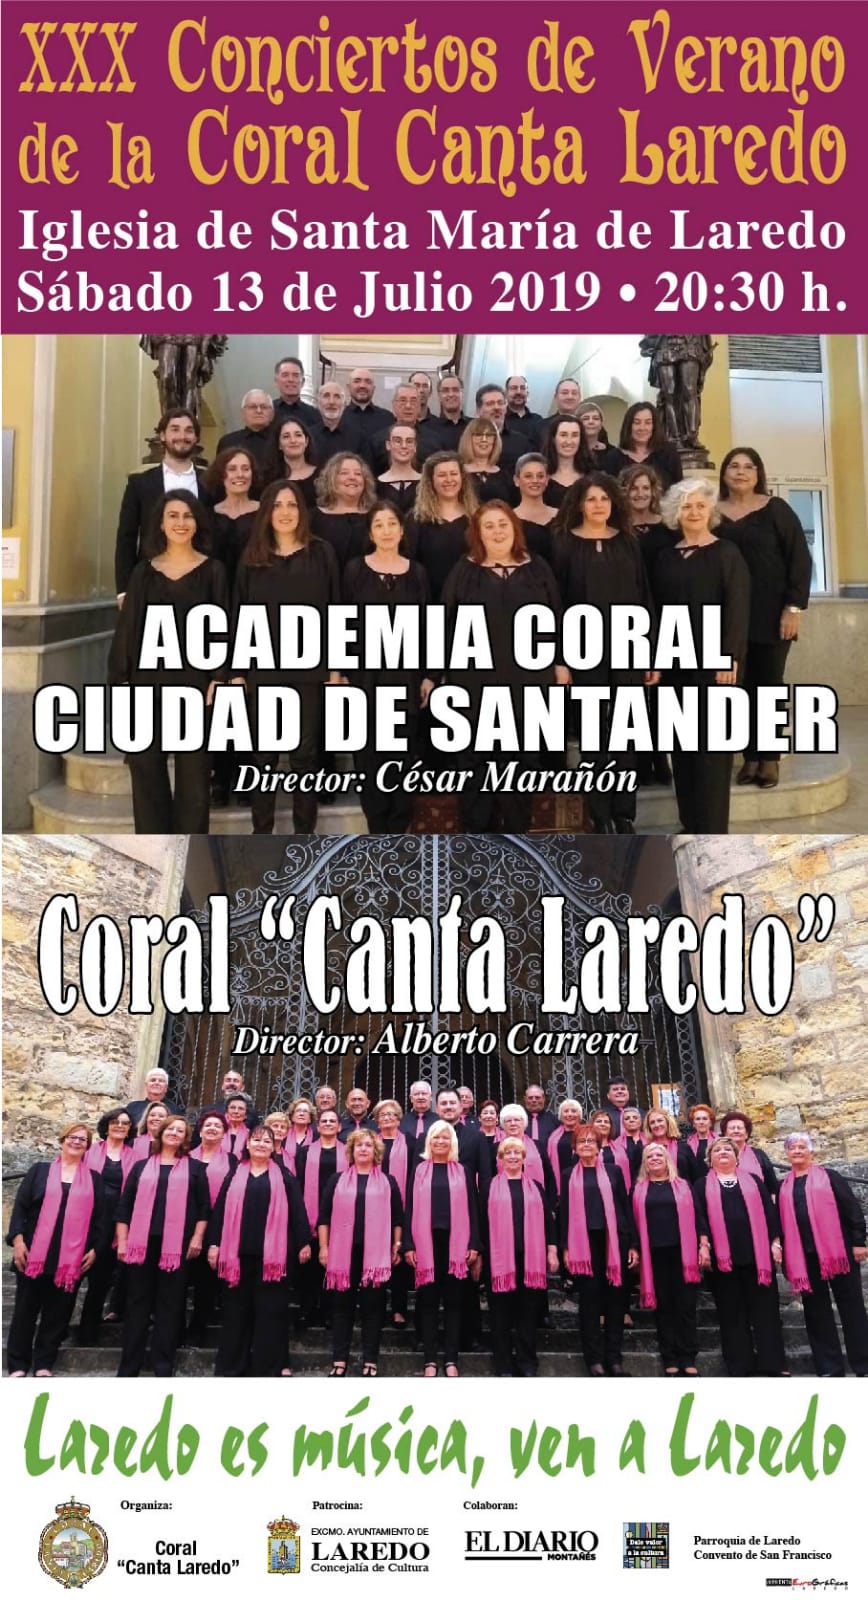 XXX Conciertos de verano de la Coral Canta Laredo